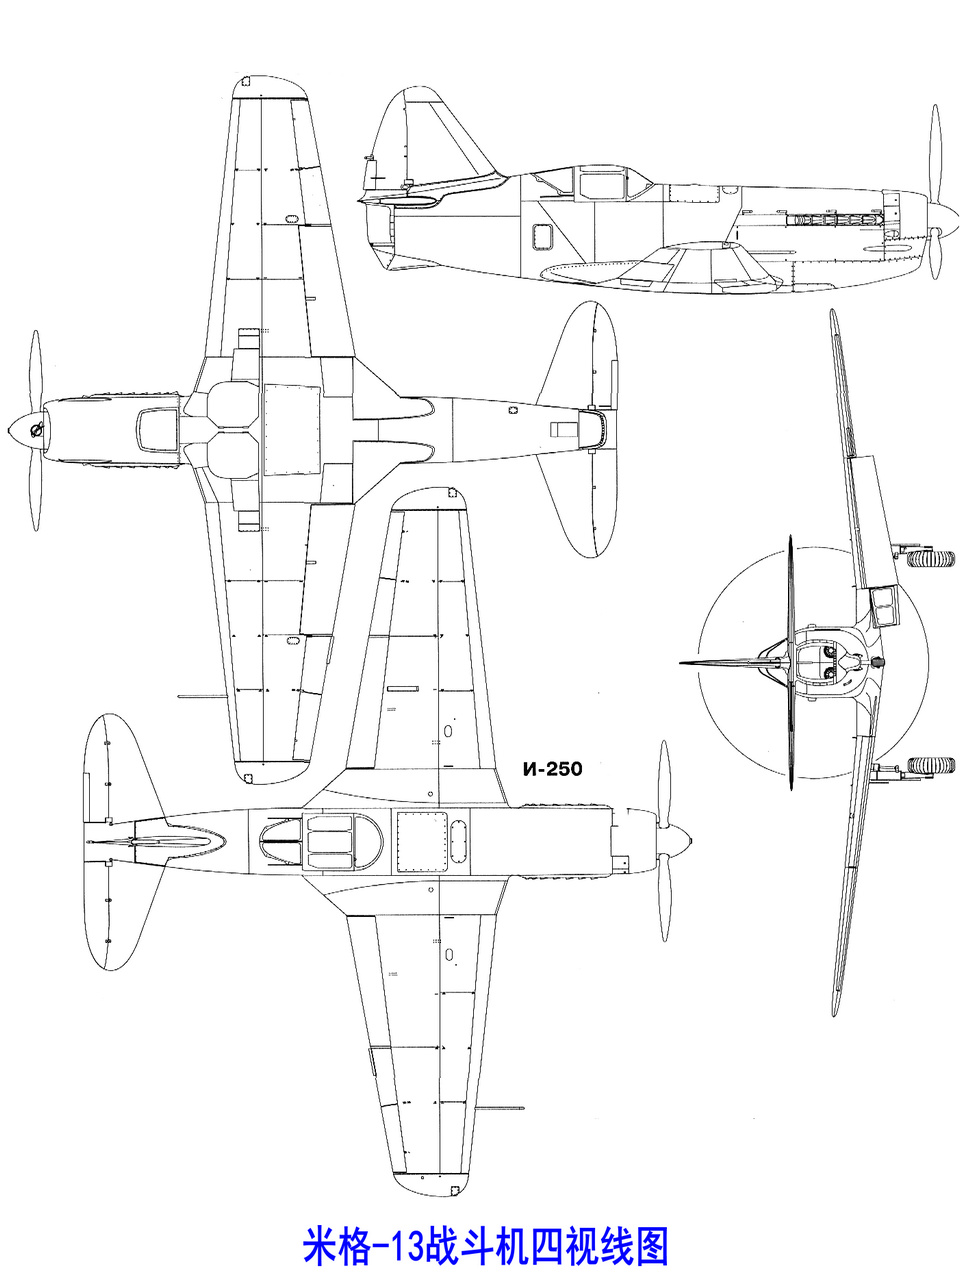 米格-13戰鬥機四視線圖